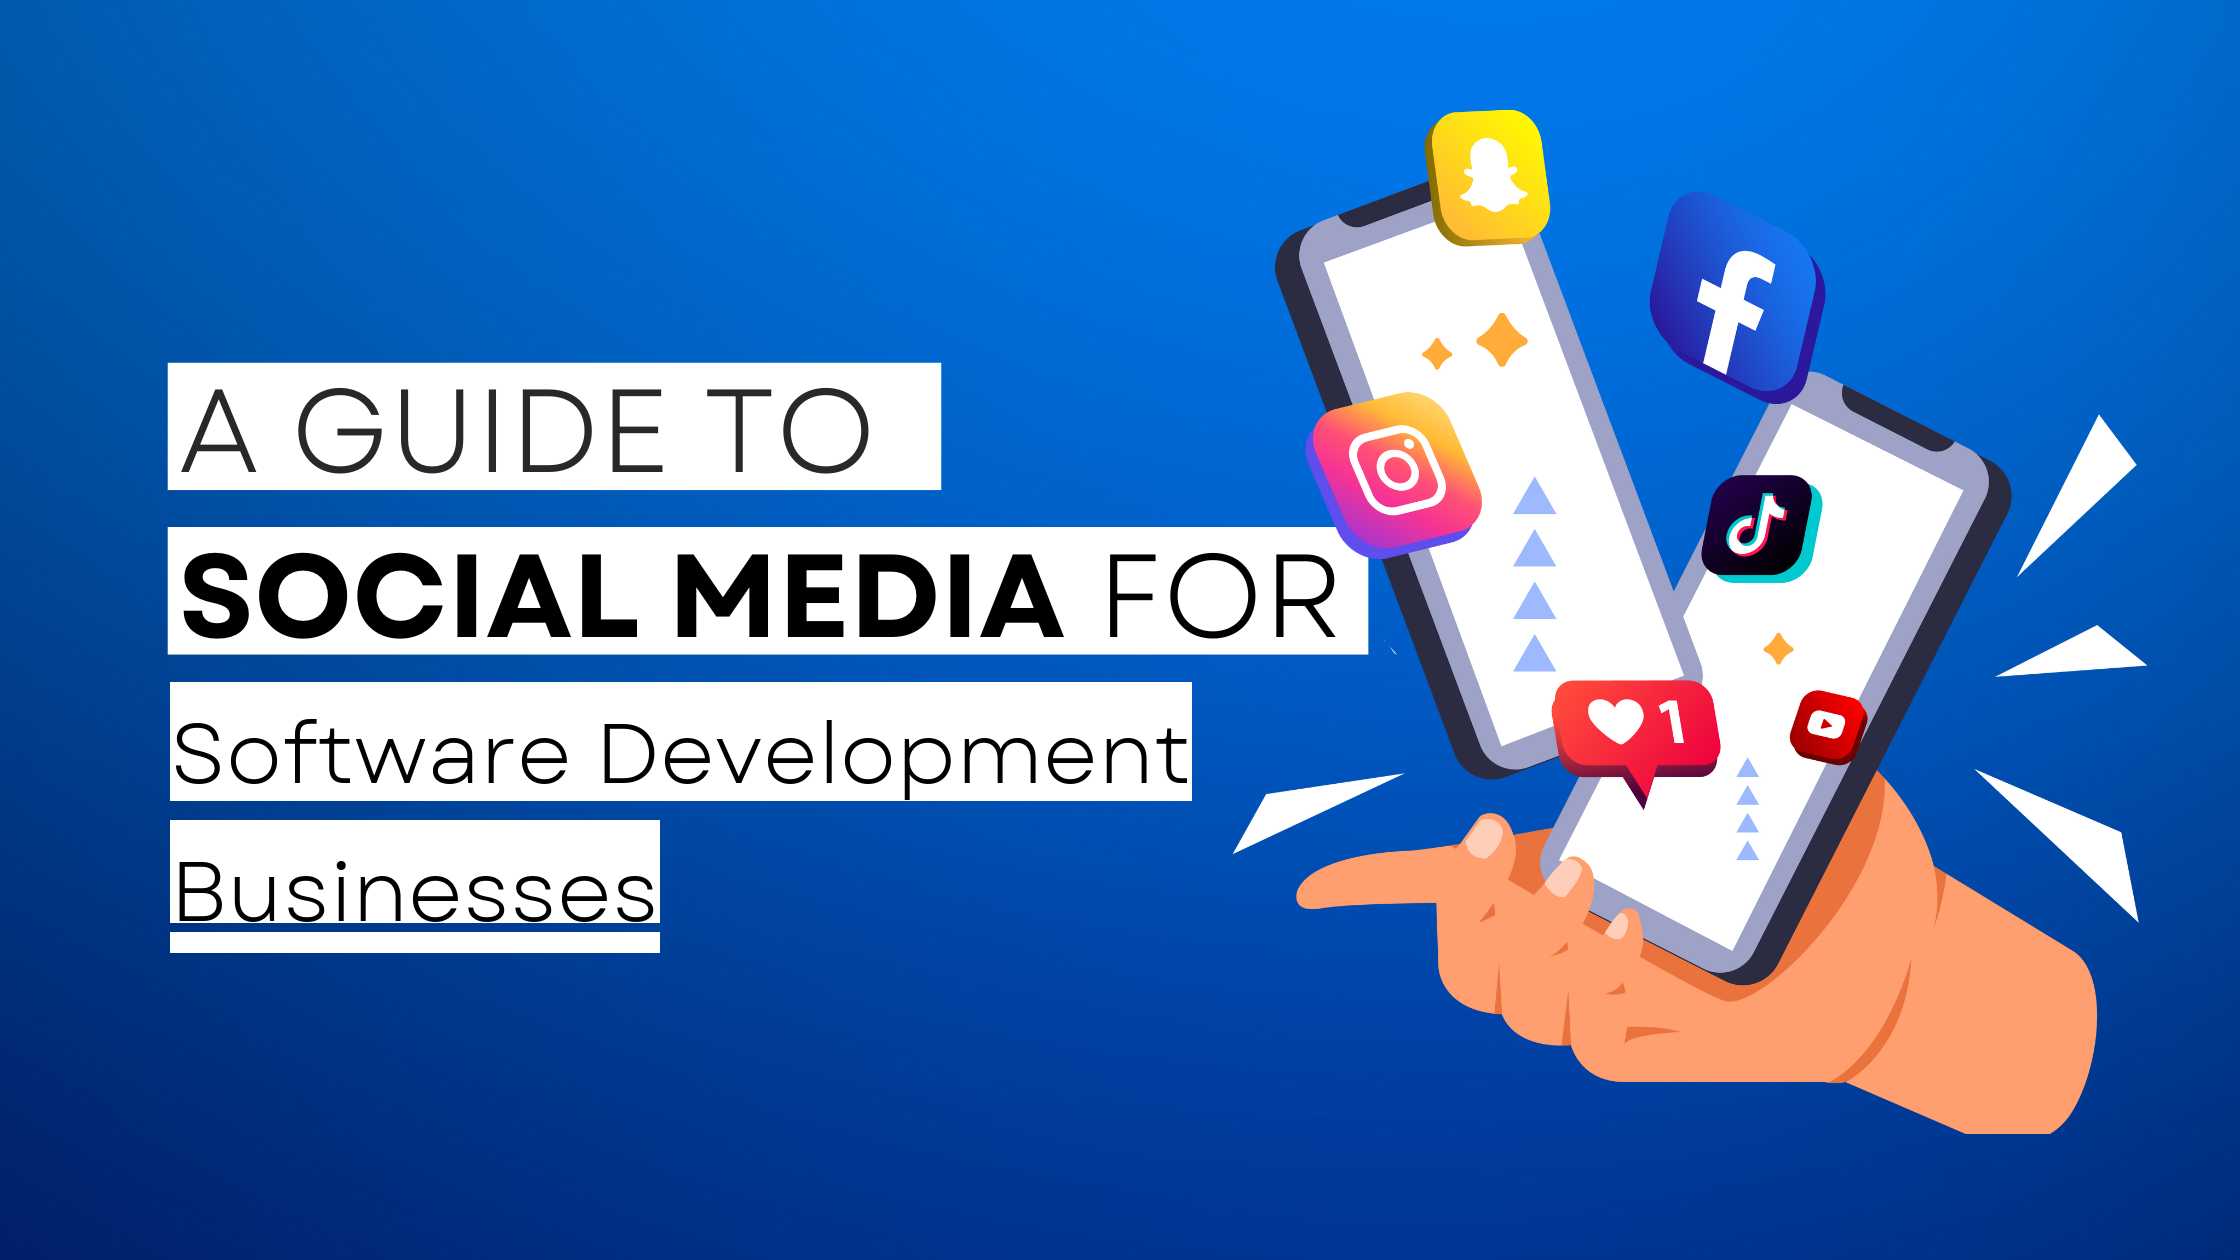 How to start Software Development  on social media